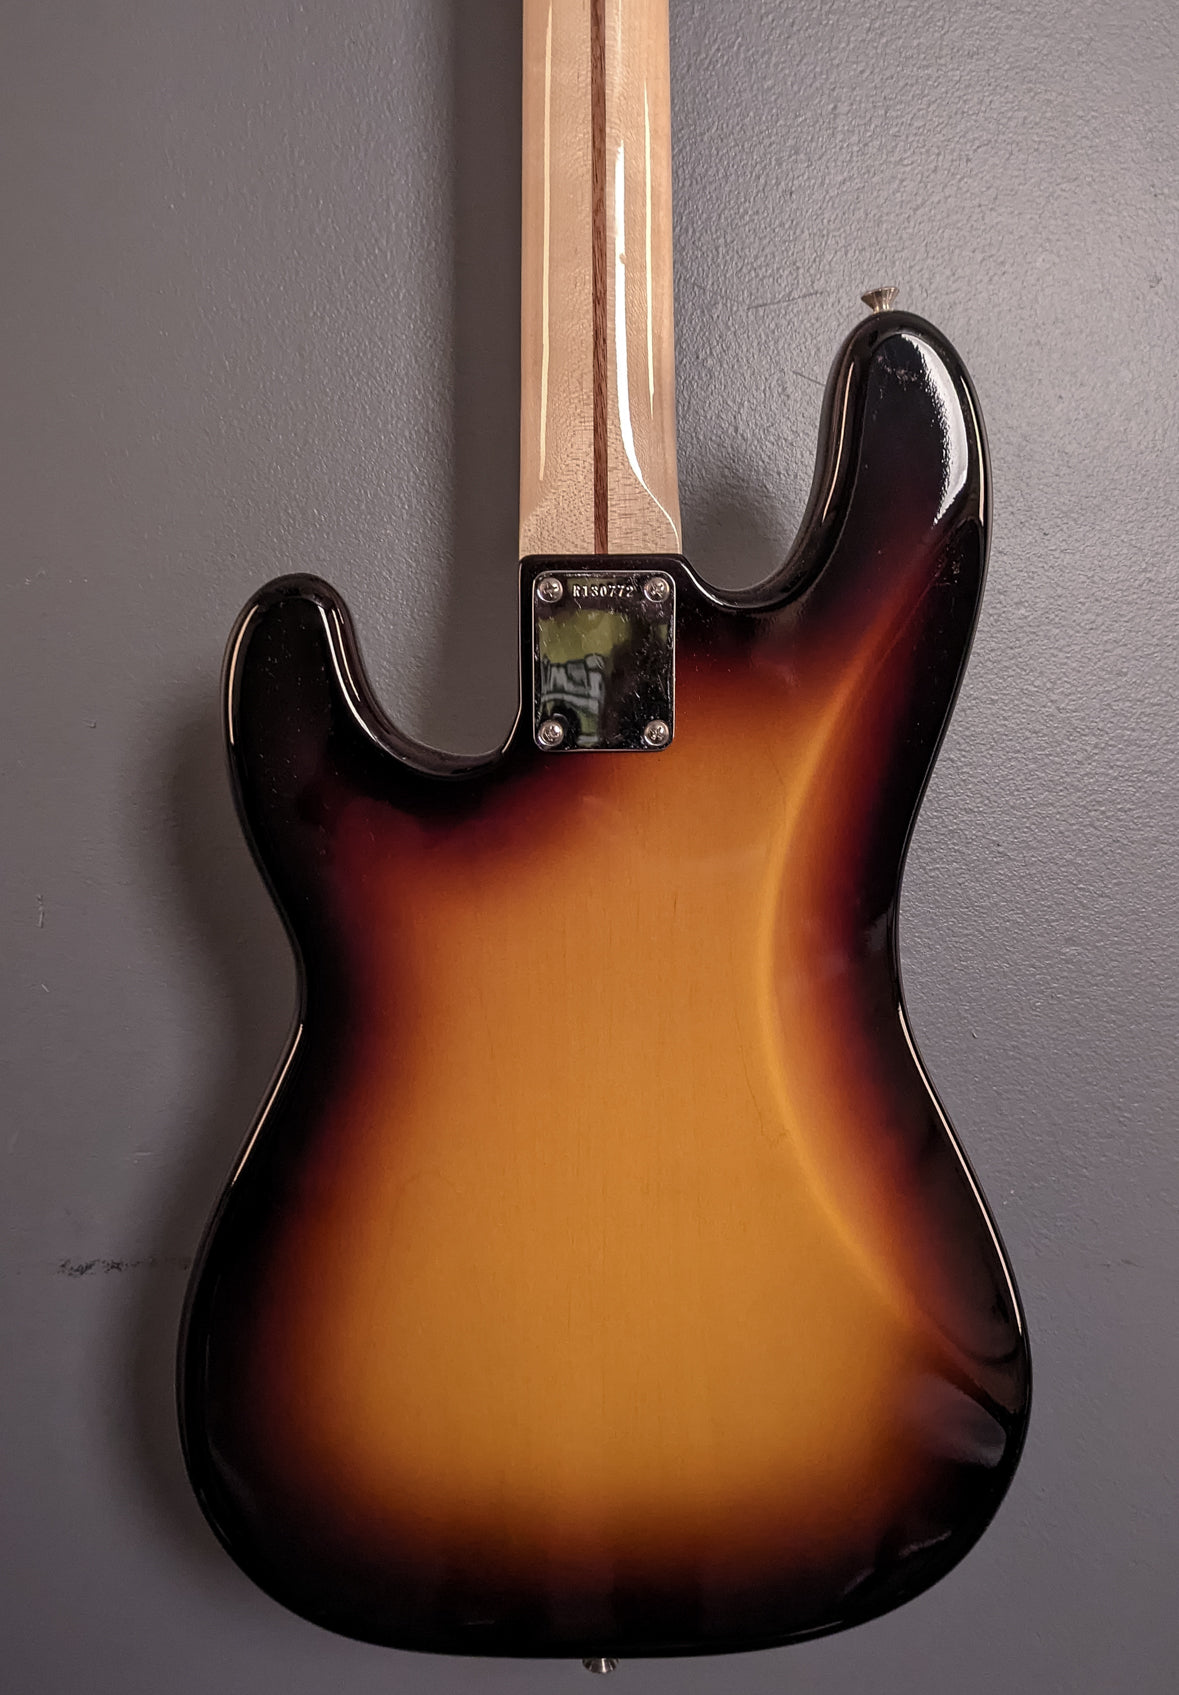 Vintage Custom '57 P Bass - Wide Fade 2 Color Sunburst